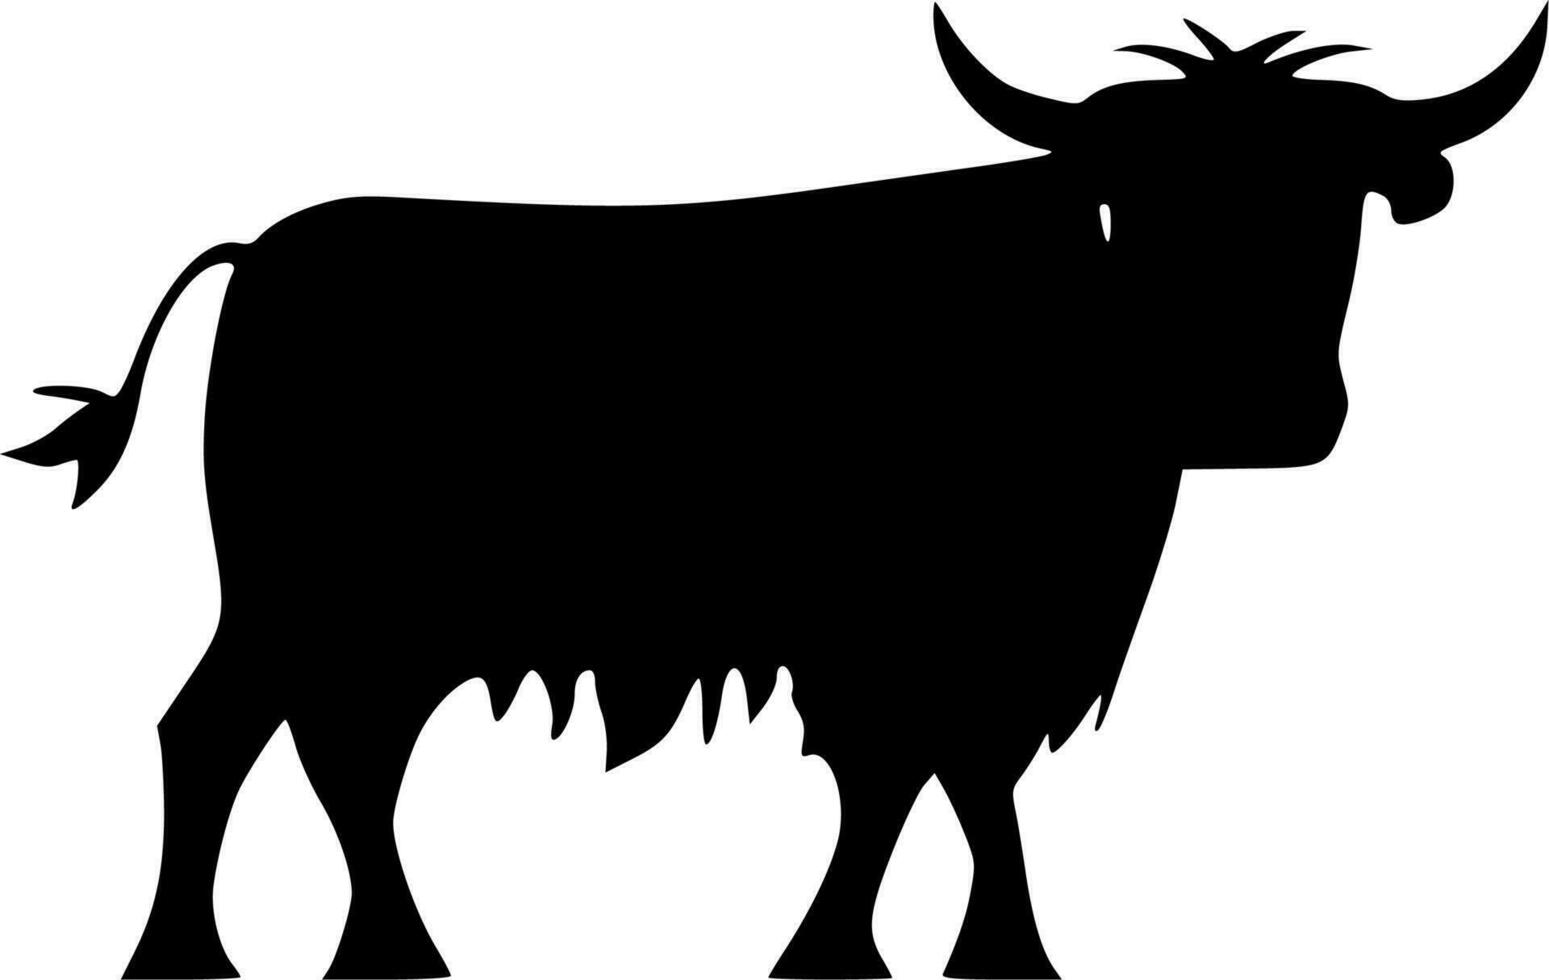 tierras altas vaca - alto calidad vector logo - vector ilustración ideal para camiseta gráfico